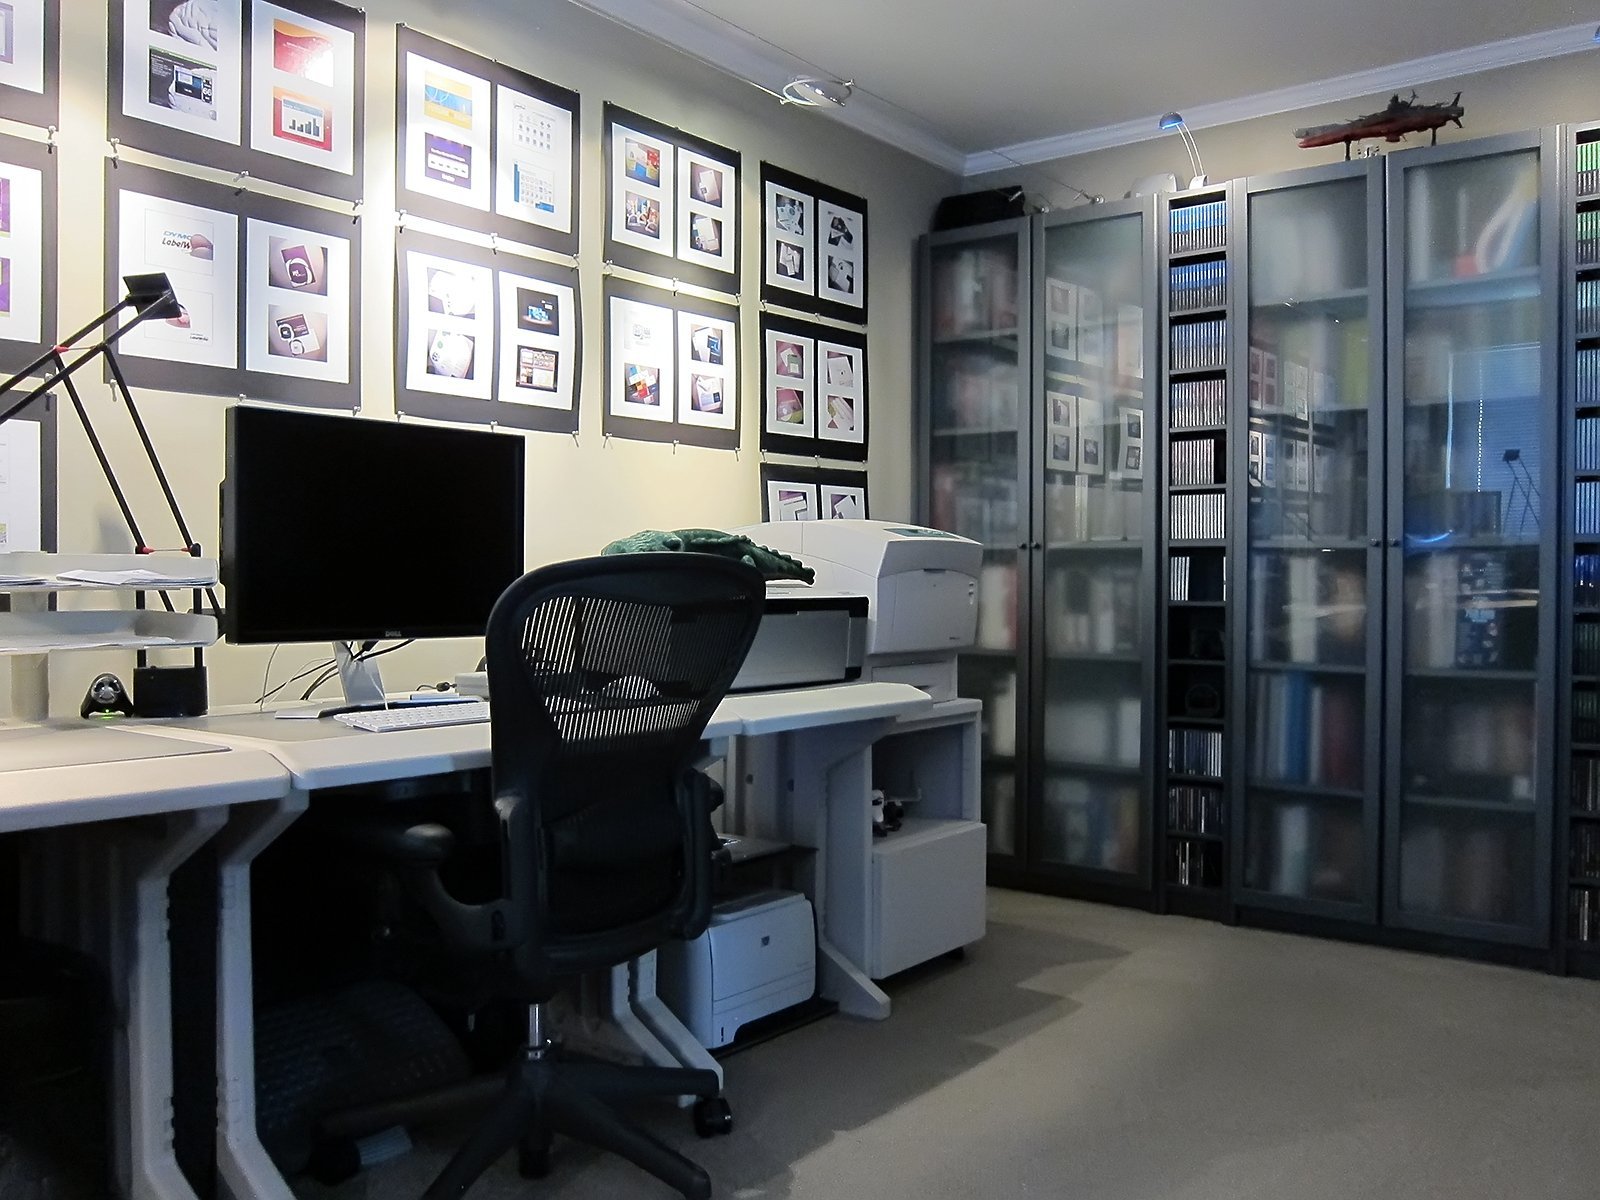 My shop кабинет. The офис. Дизайн рабочего места. Рабочий кабинет программиста. Офис программистов.